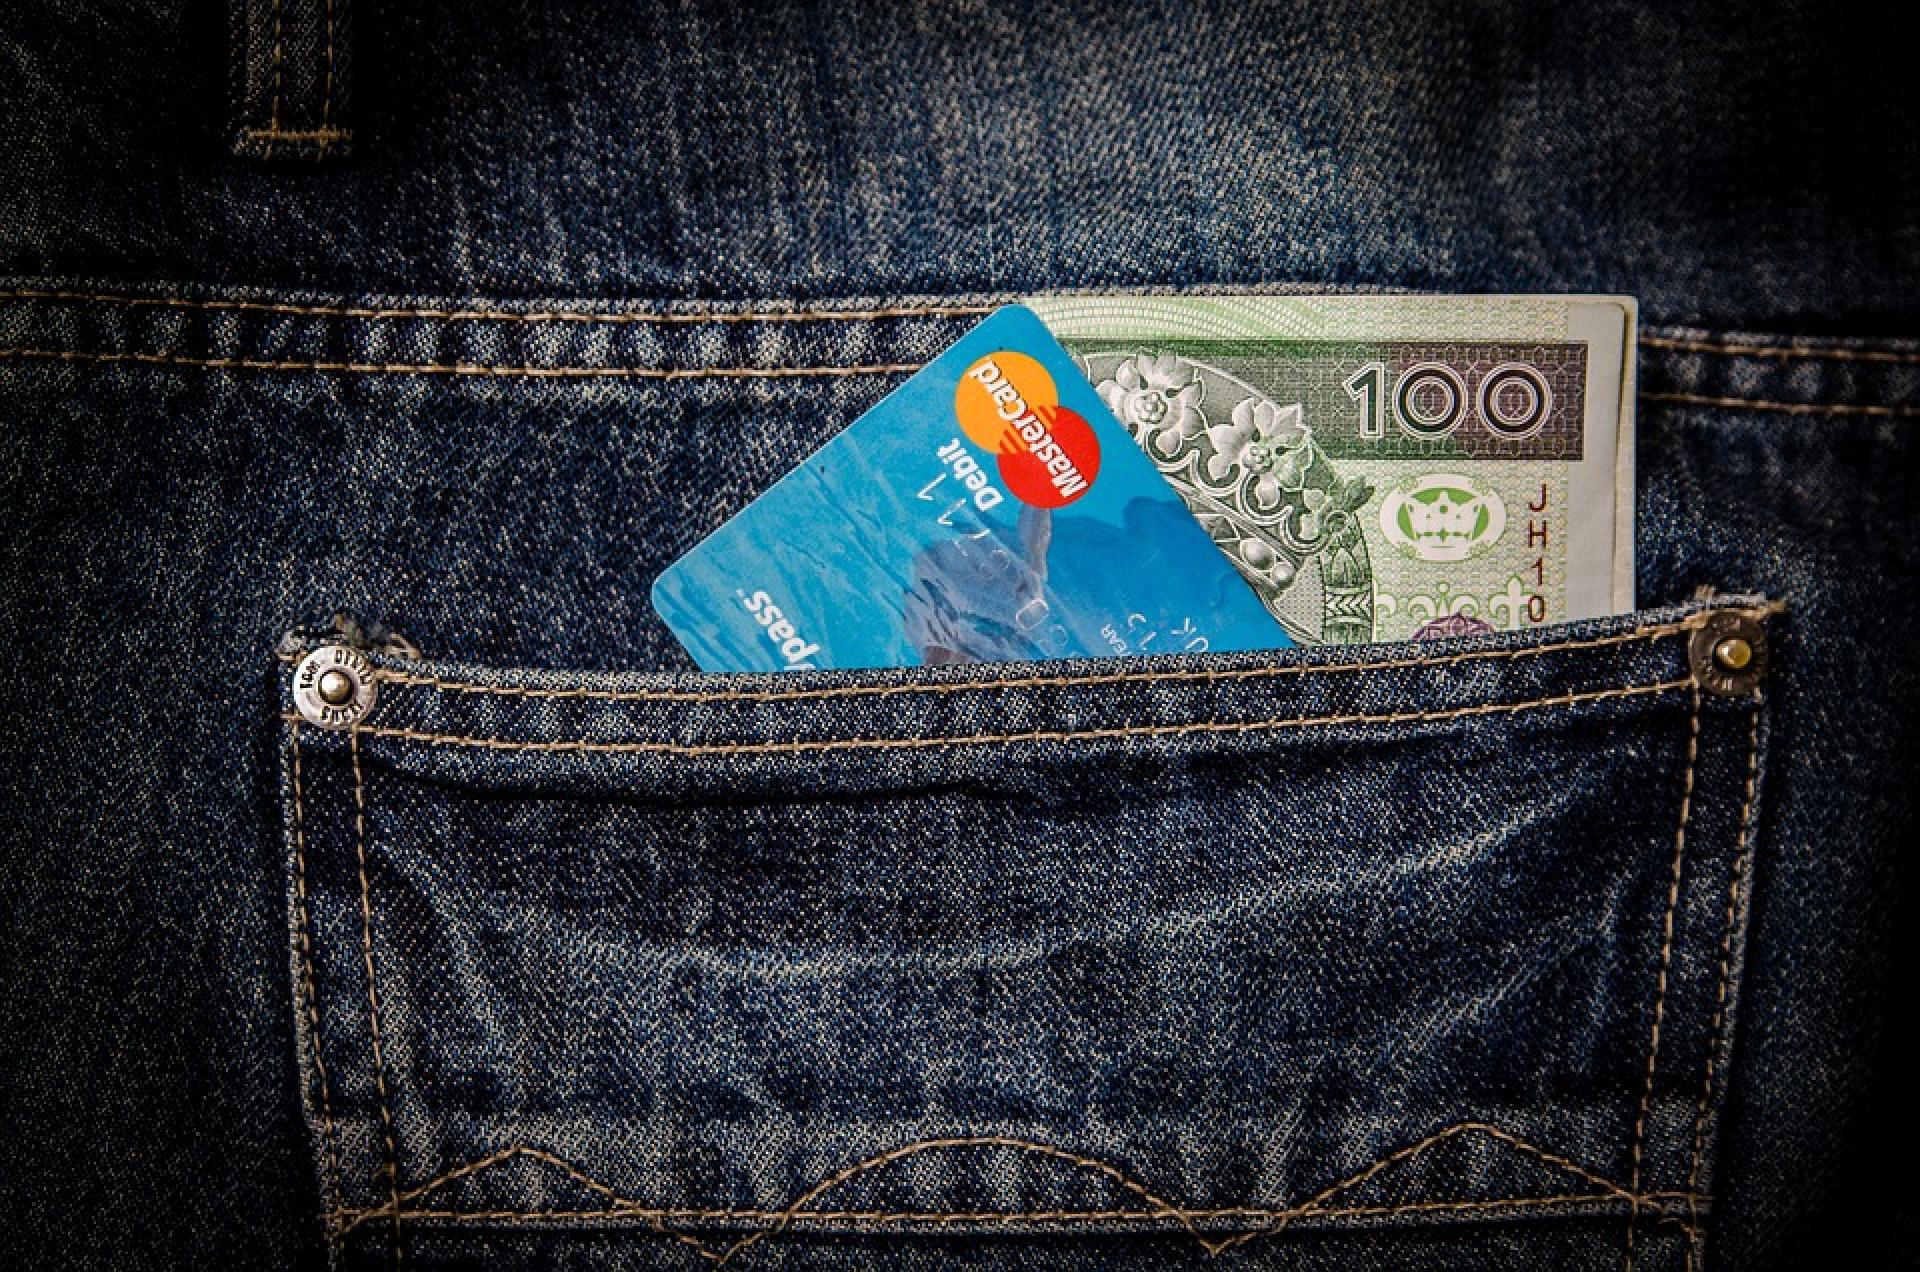 Banknot 100 złotych i karta płatnicza wystające z kieszeni dżinsowych spodni